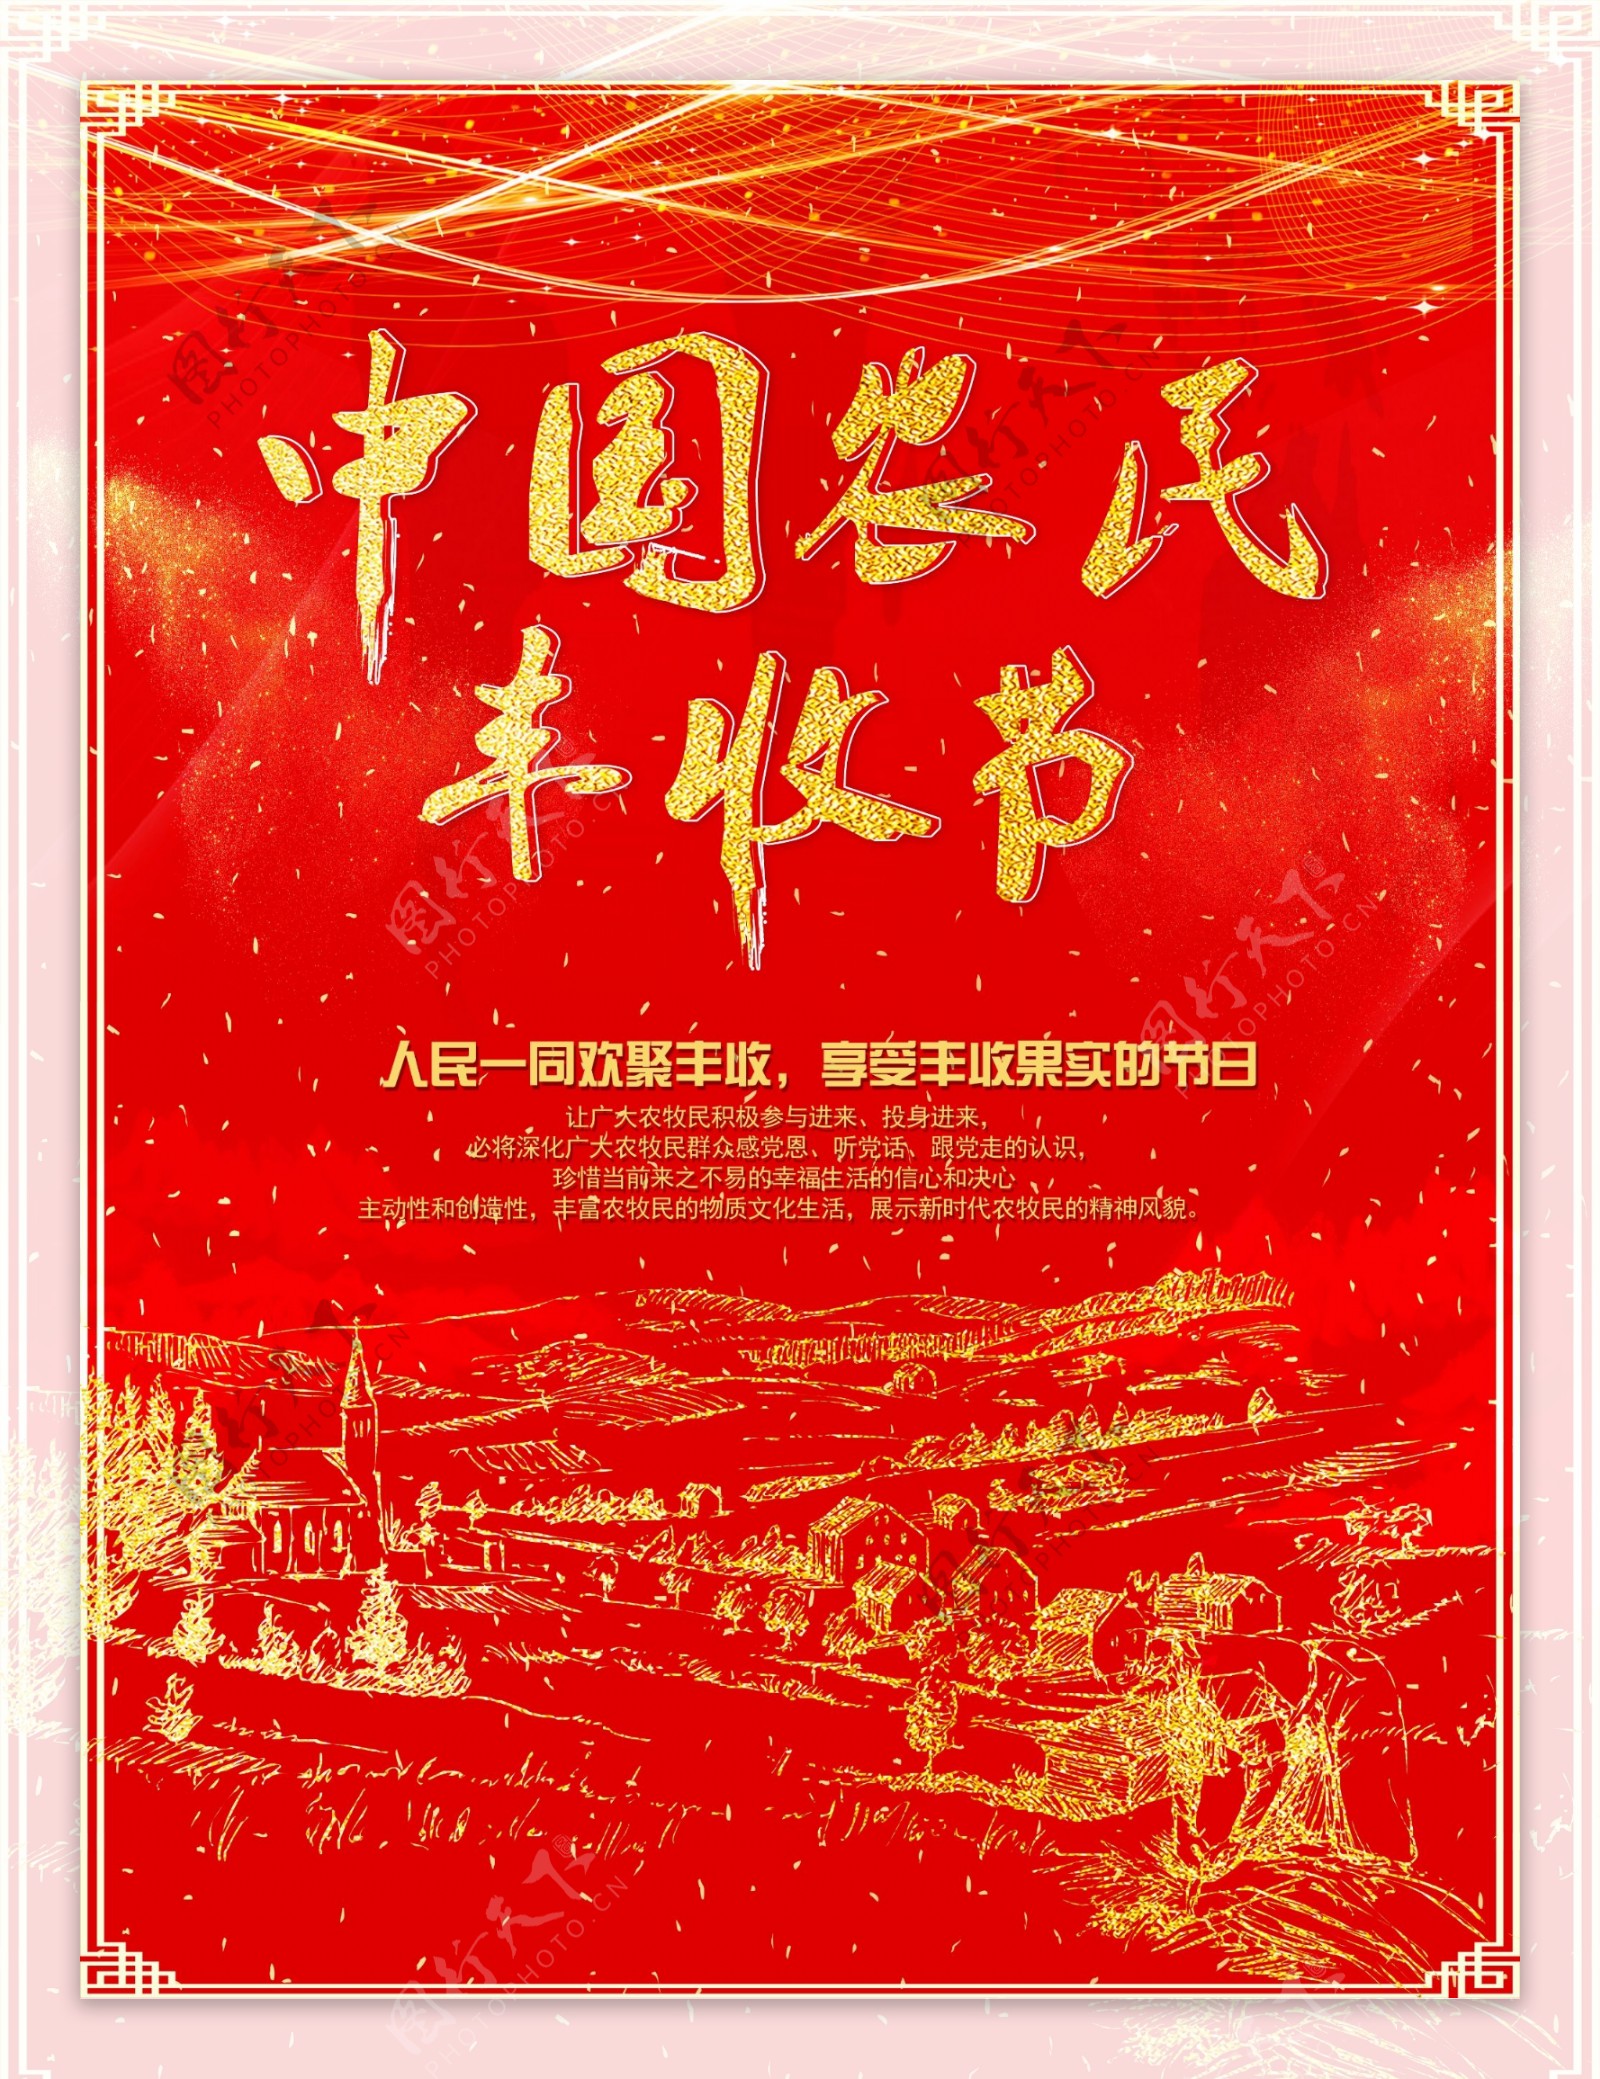 红色喜庆中国农民丰收节海报设计